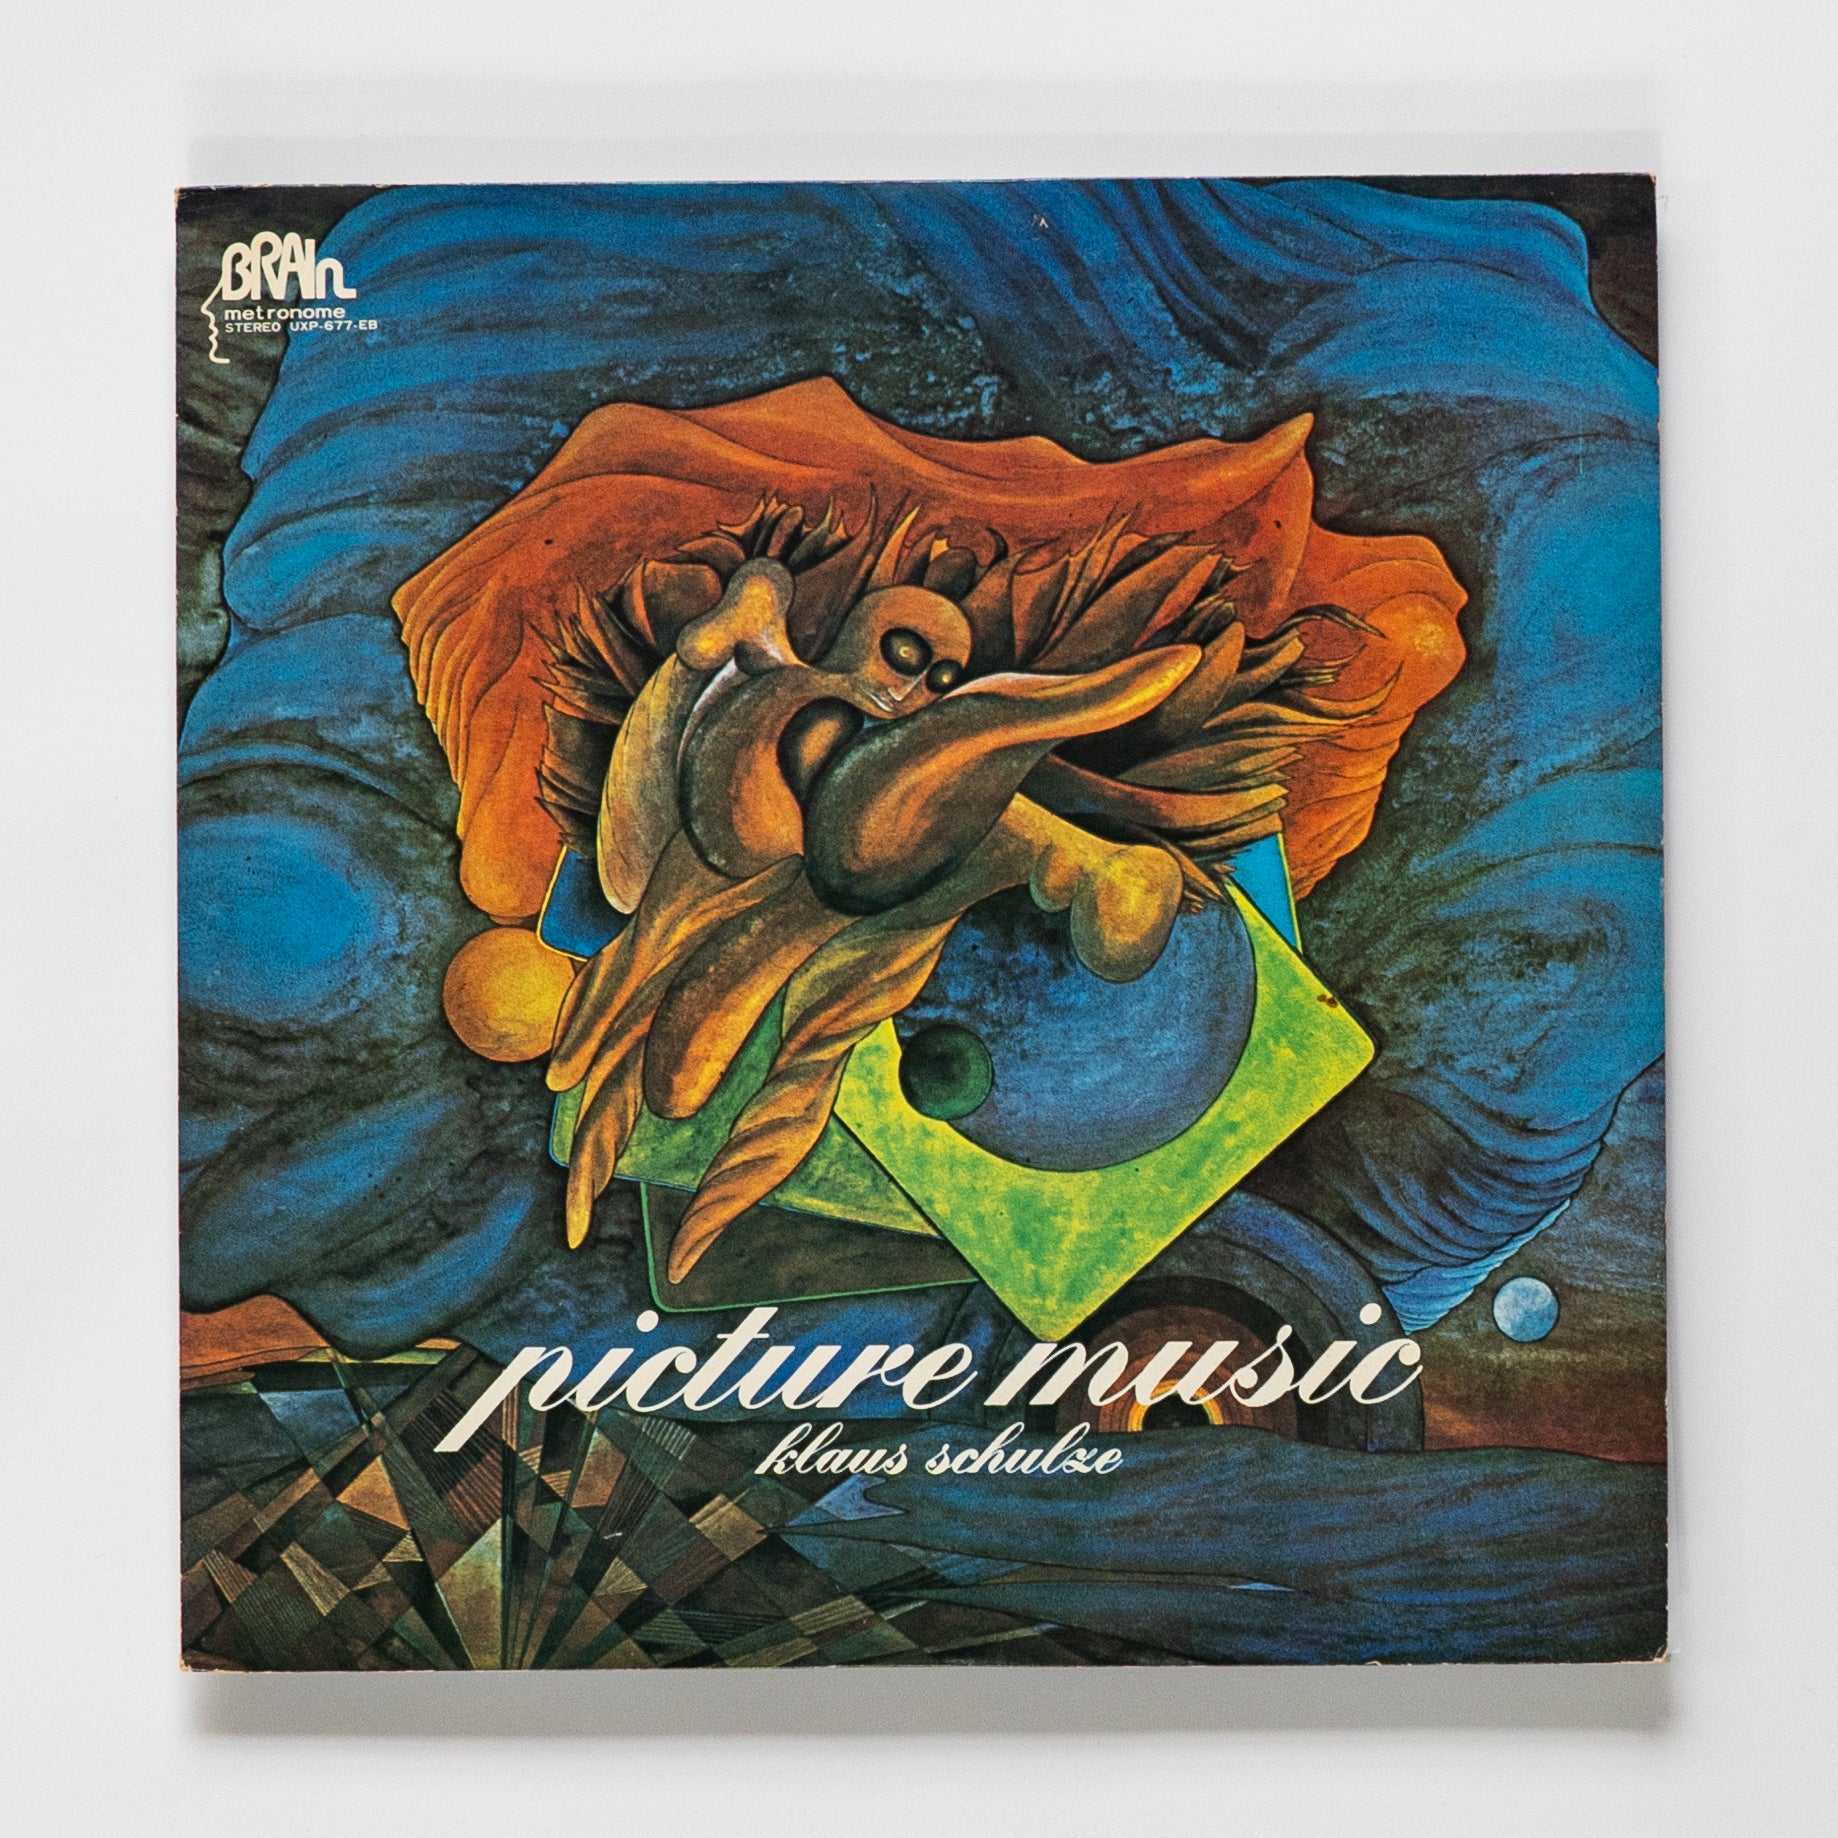 Klaus Schulze / Picture Music – Jeff Records